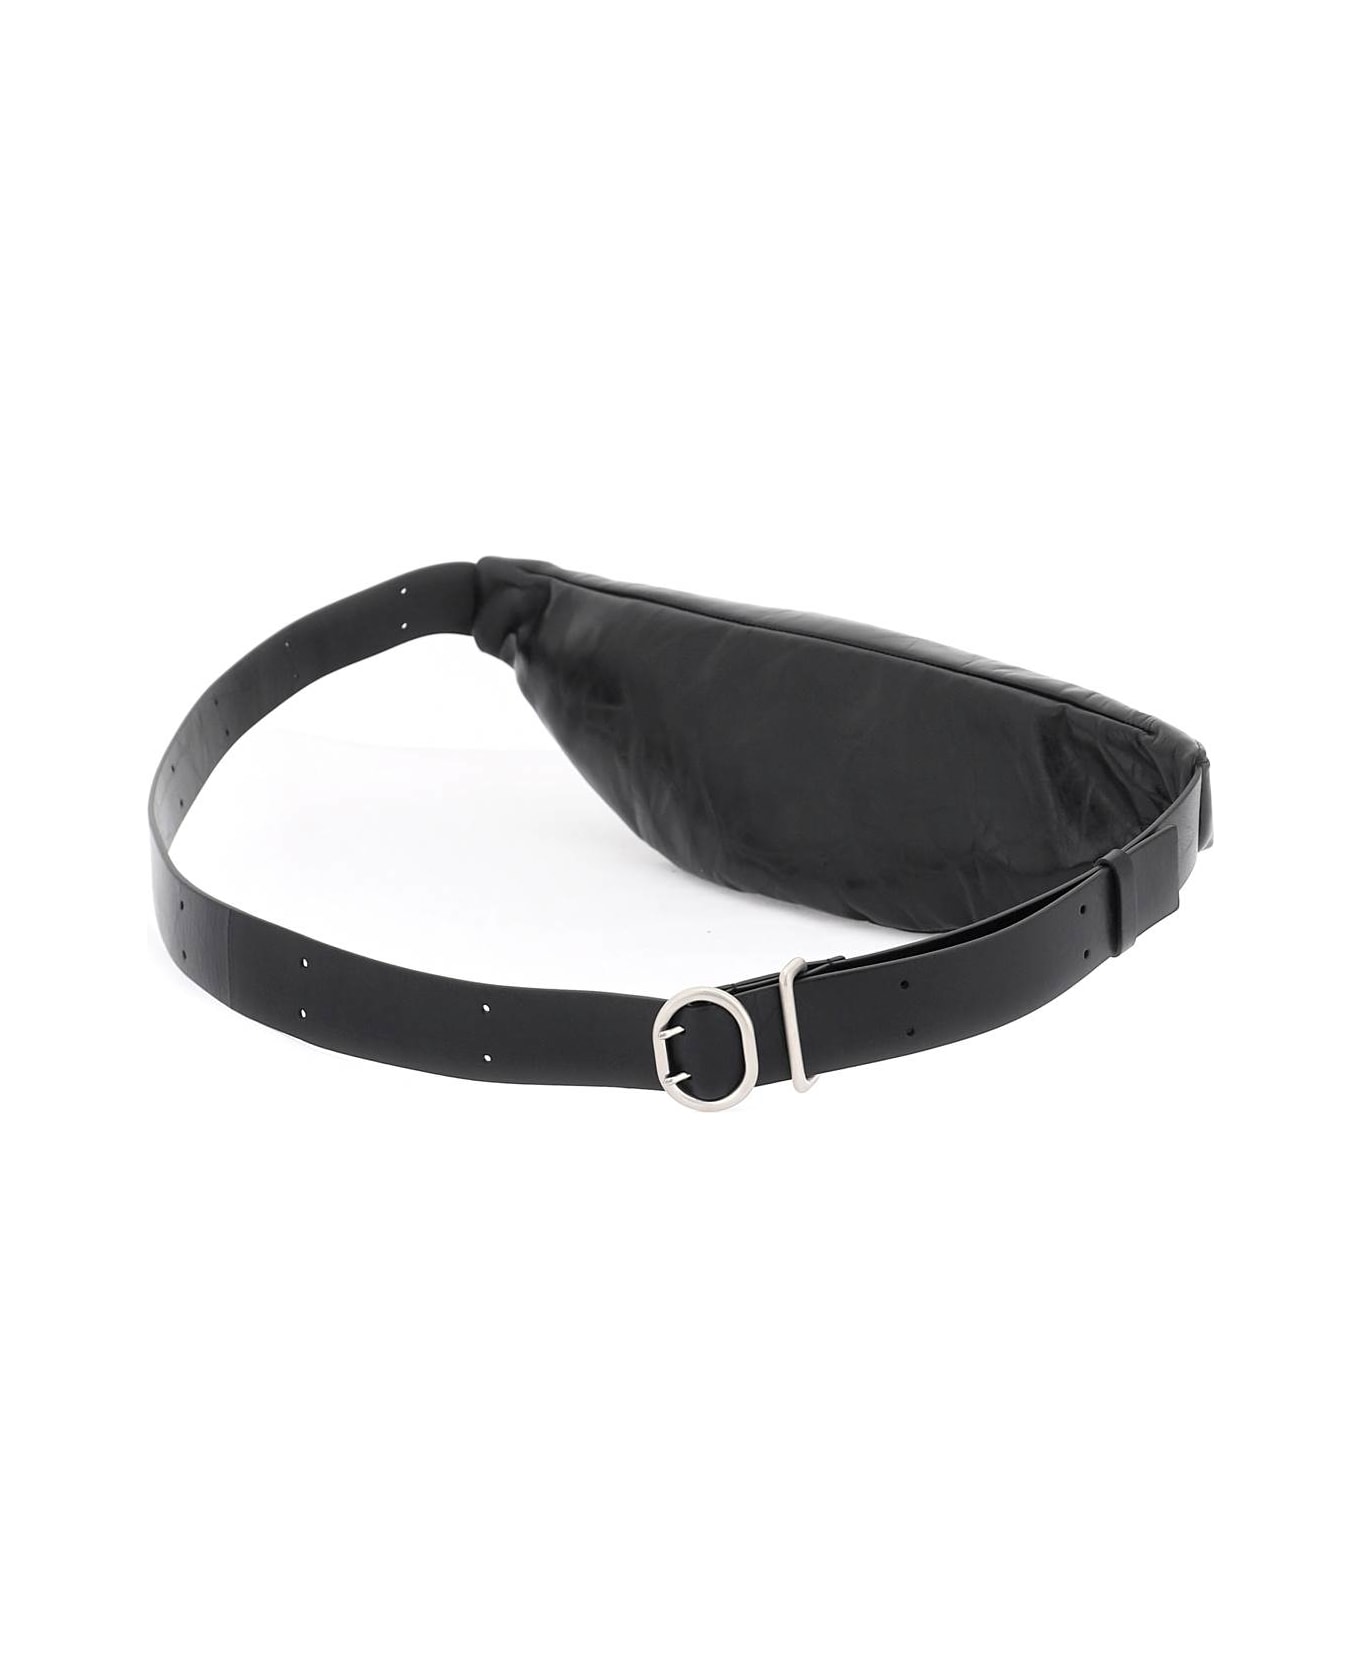 Jil Sander Black Leather Belt Bag - BLACK (Black)